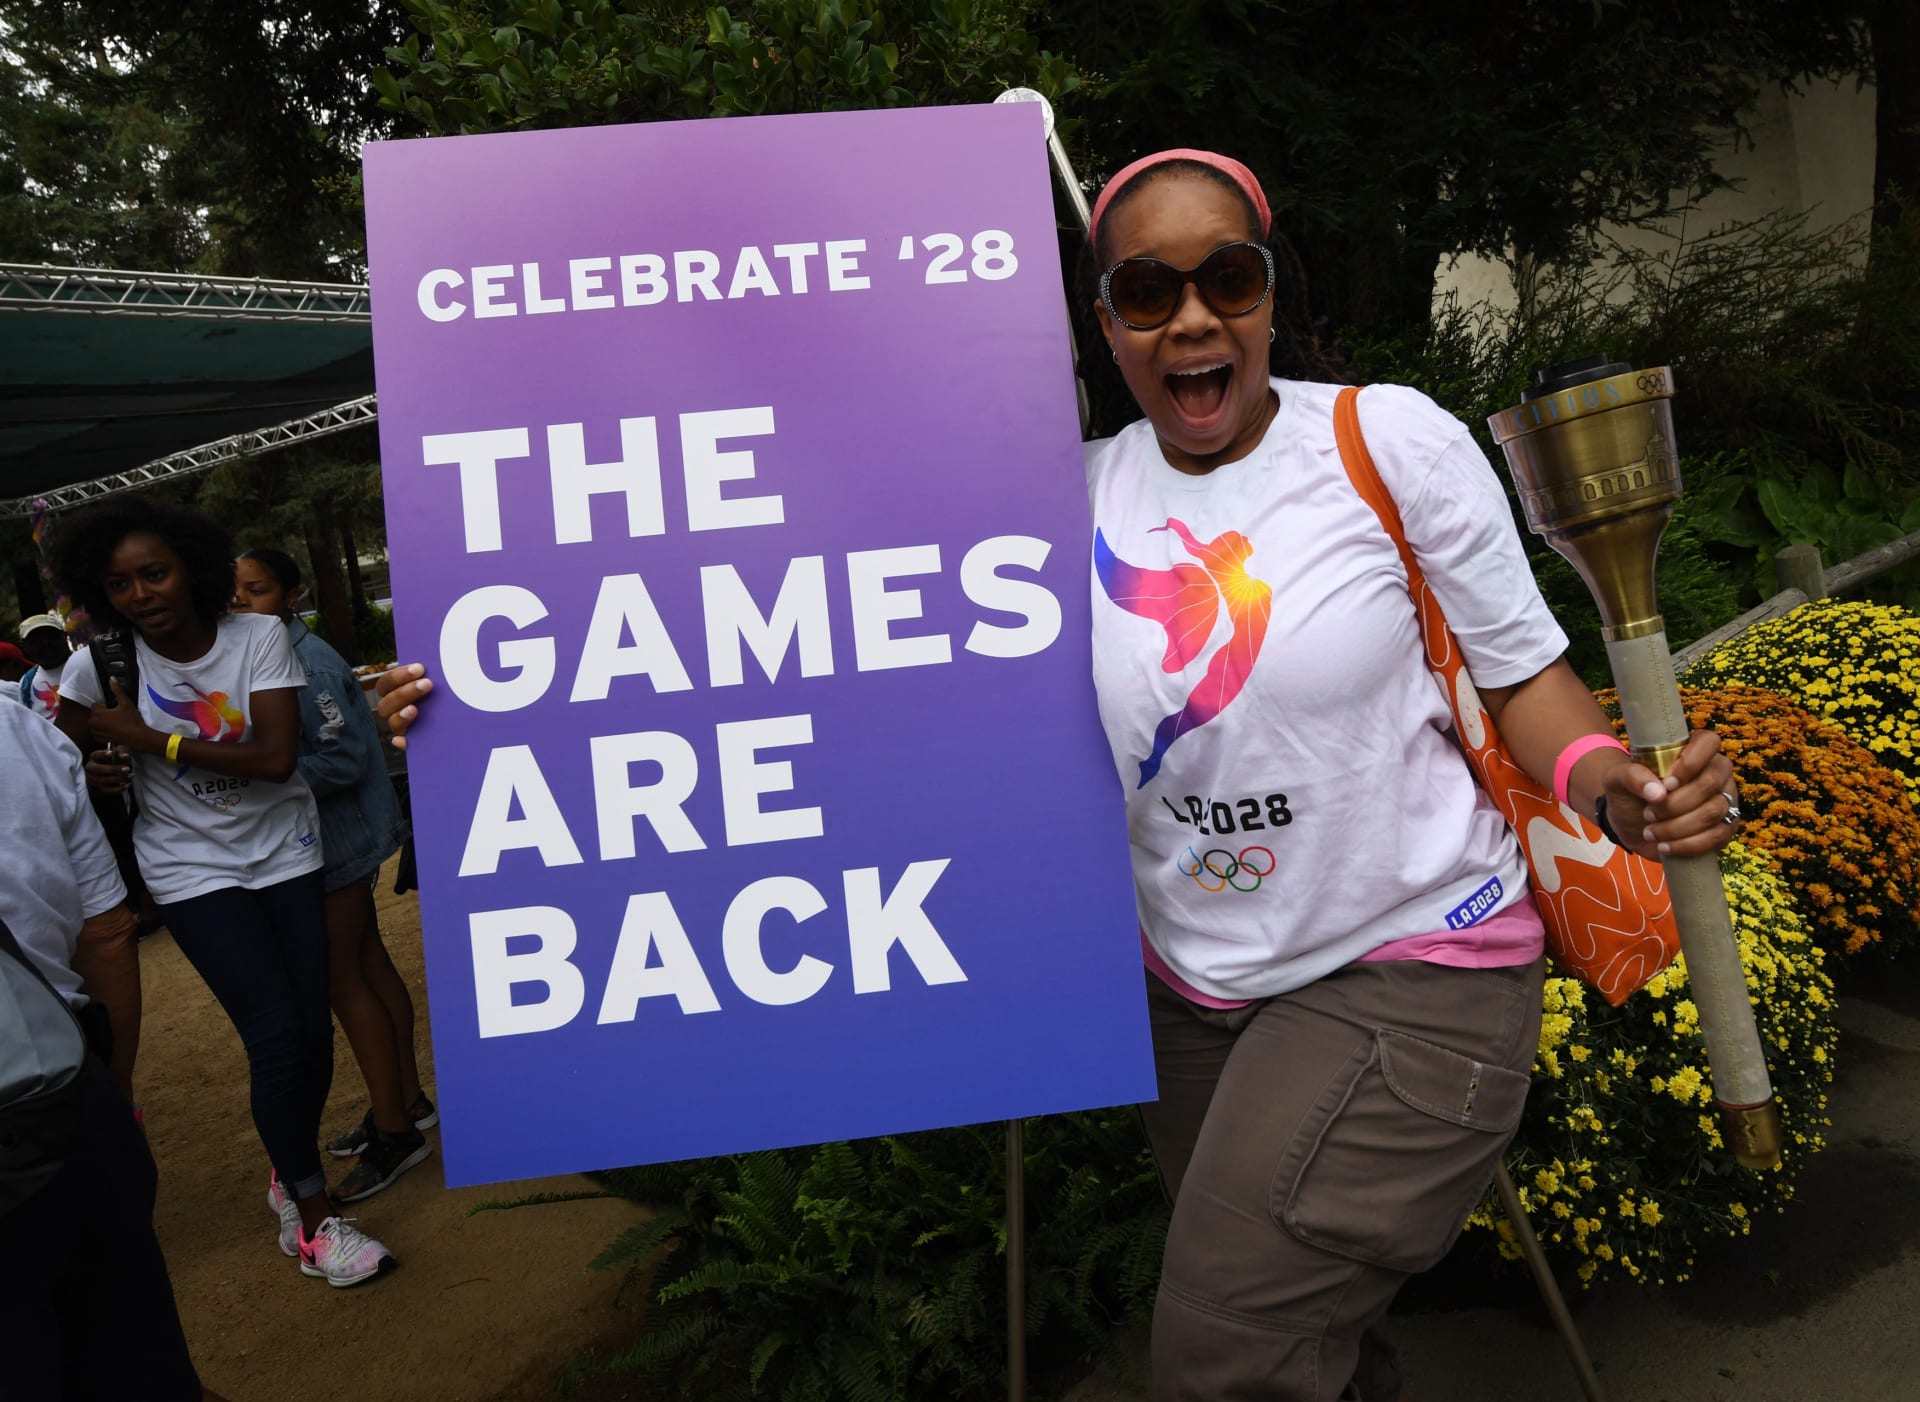 Září 2017: Olympijská dobrovolnice z Los Angeles slaví přidělení pořadatelství her jejímu městu.